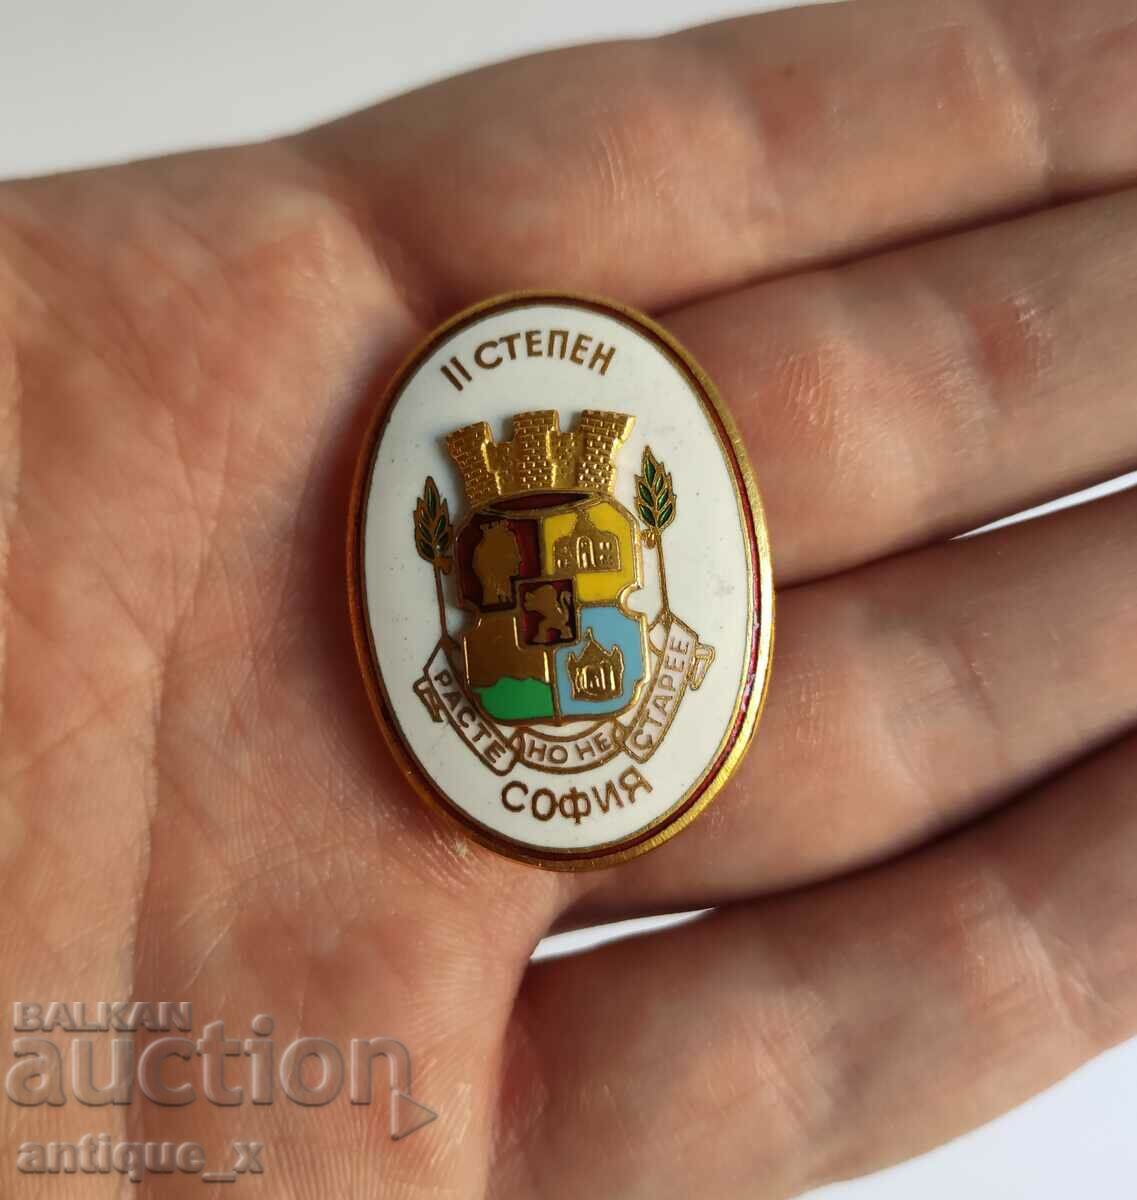 Honorary badge of Sofia - II degree